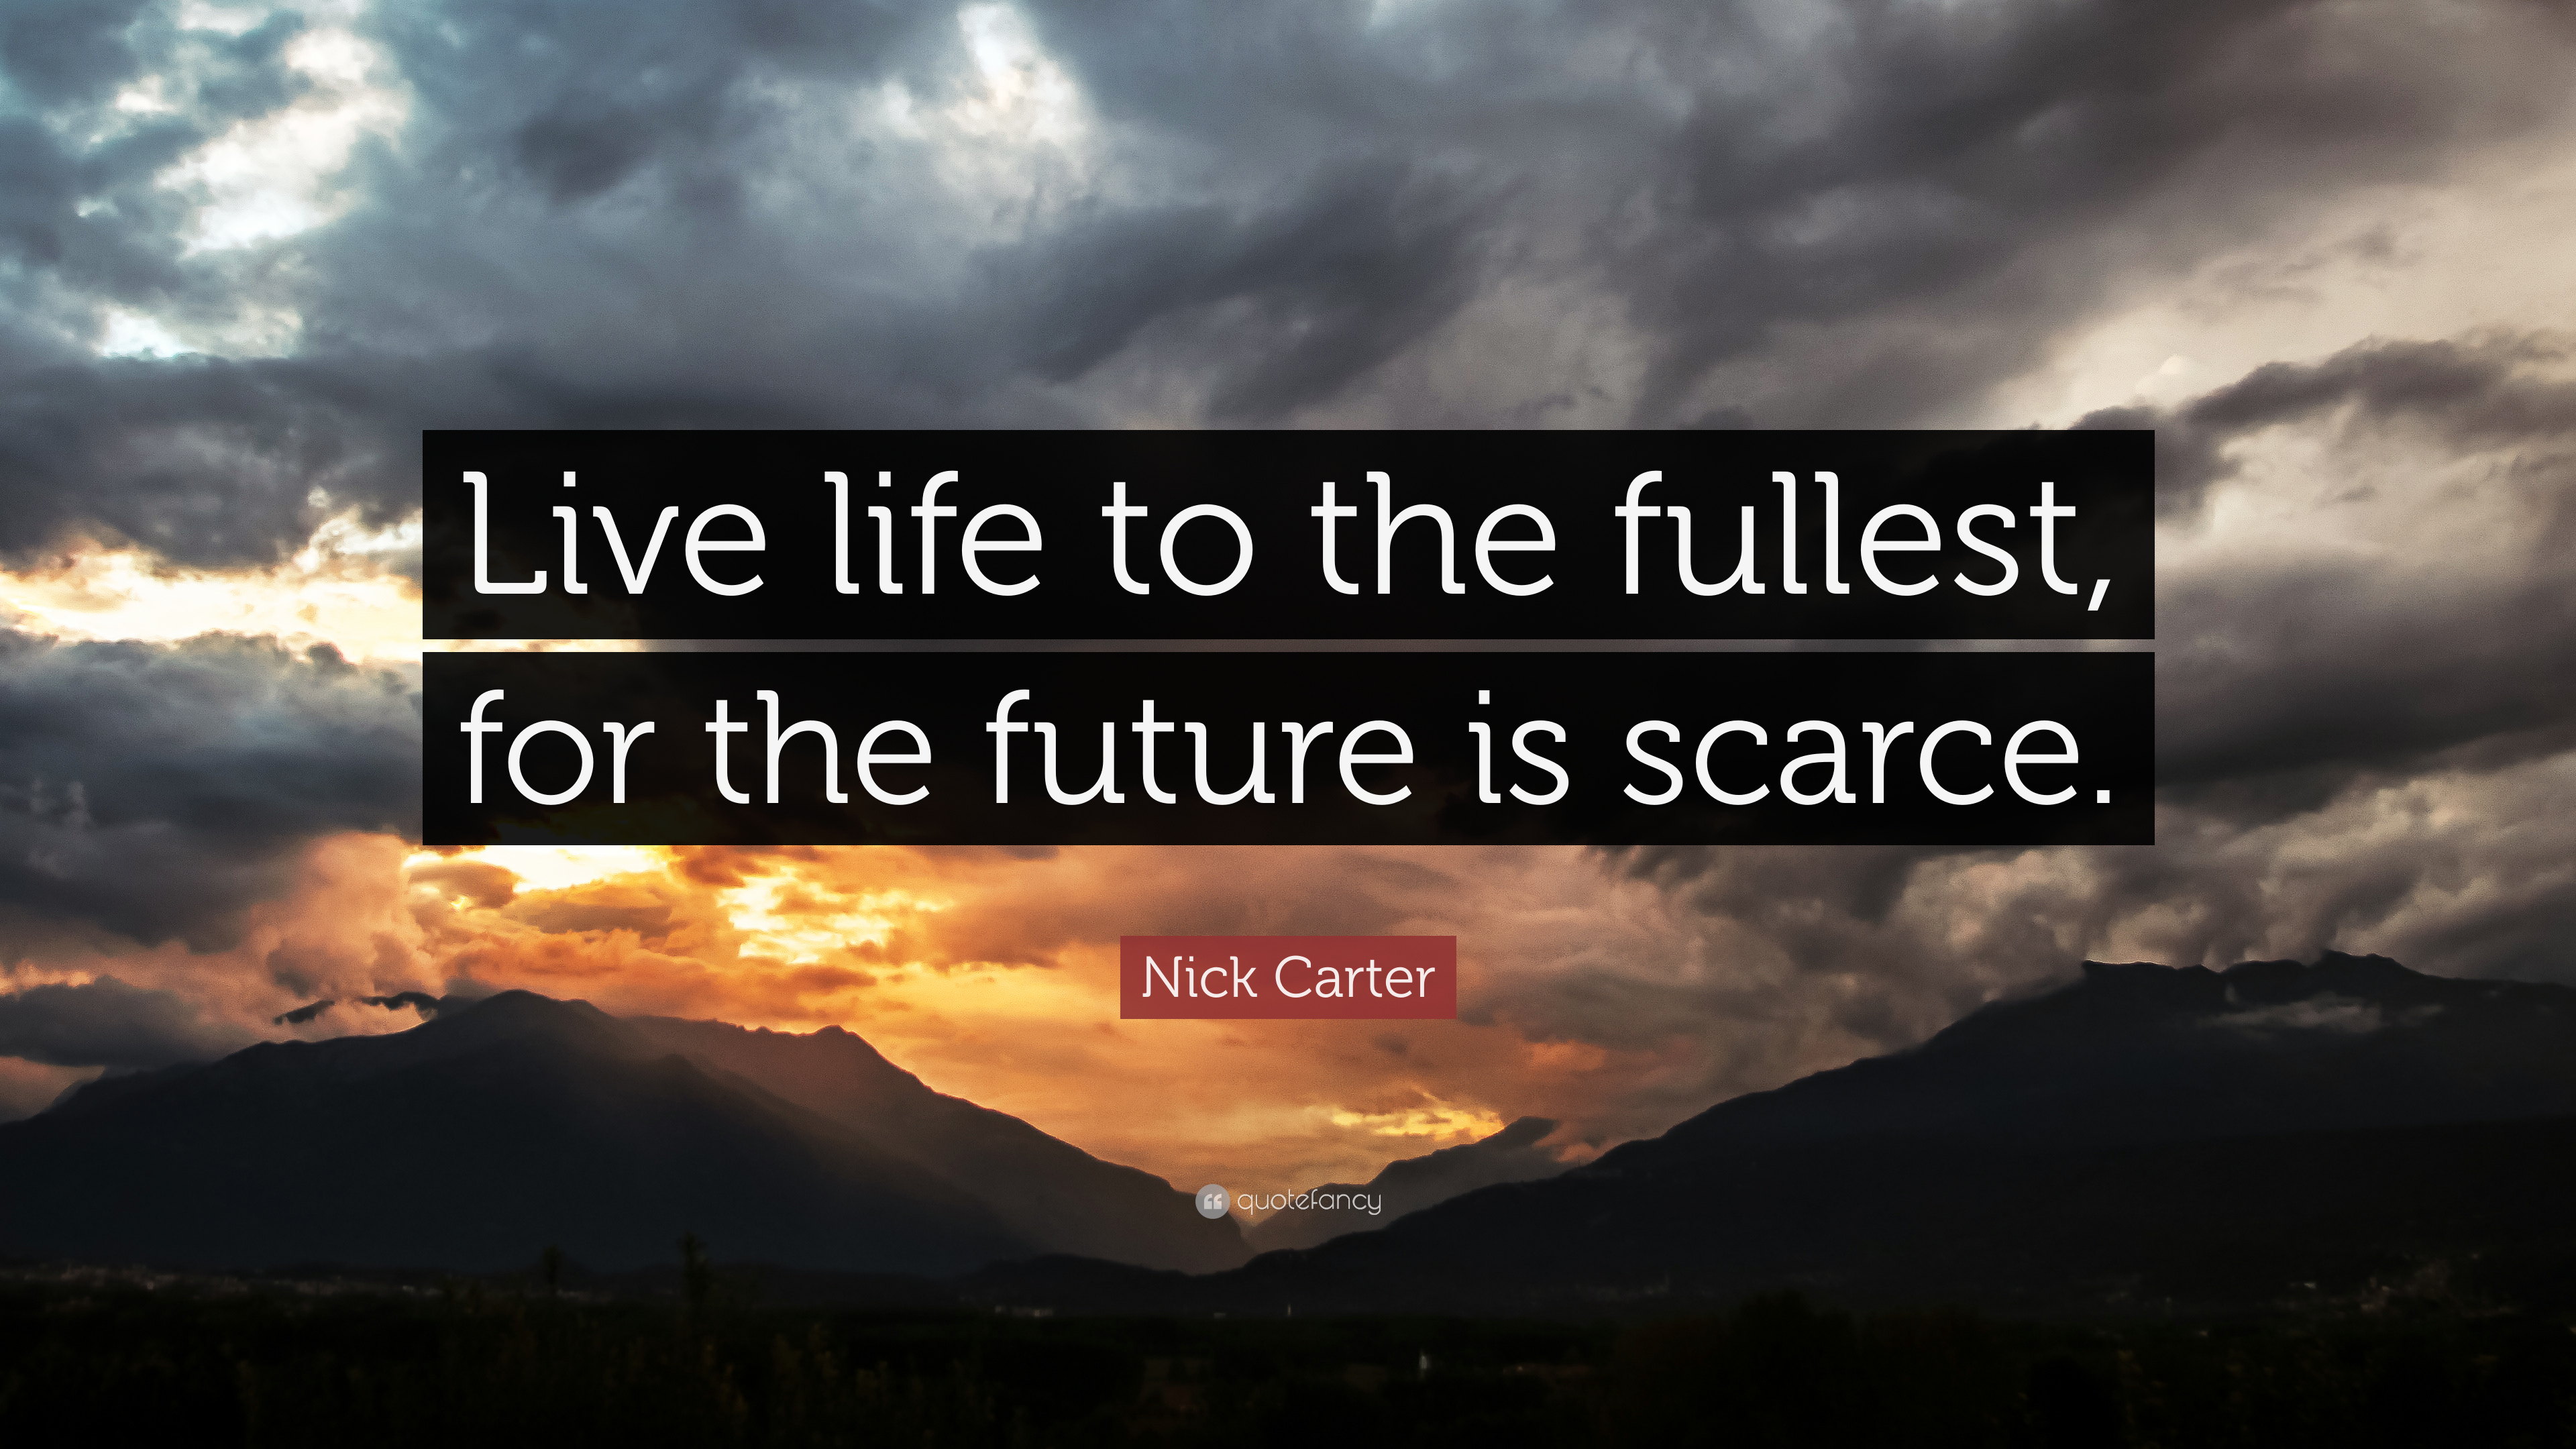 6 Inspirational Nick Carter Quotes